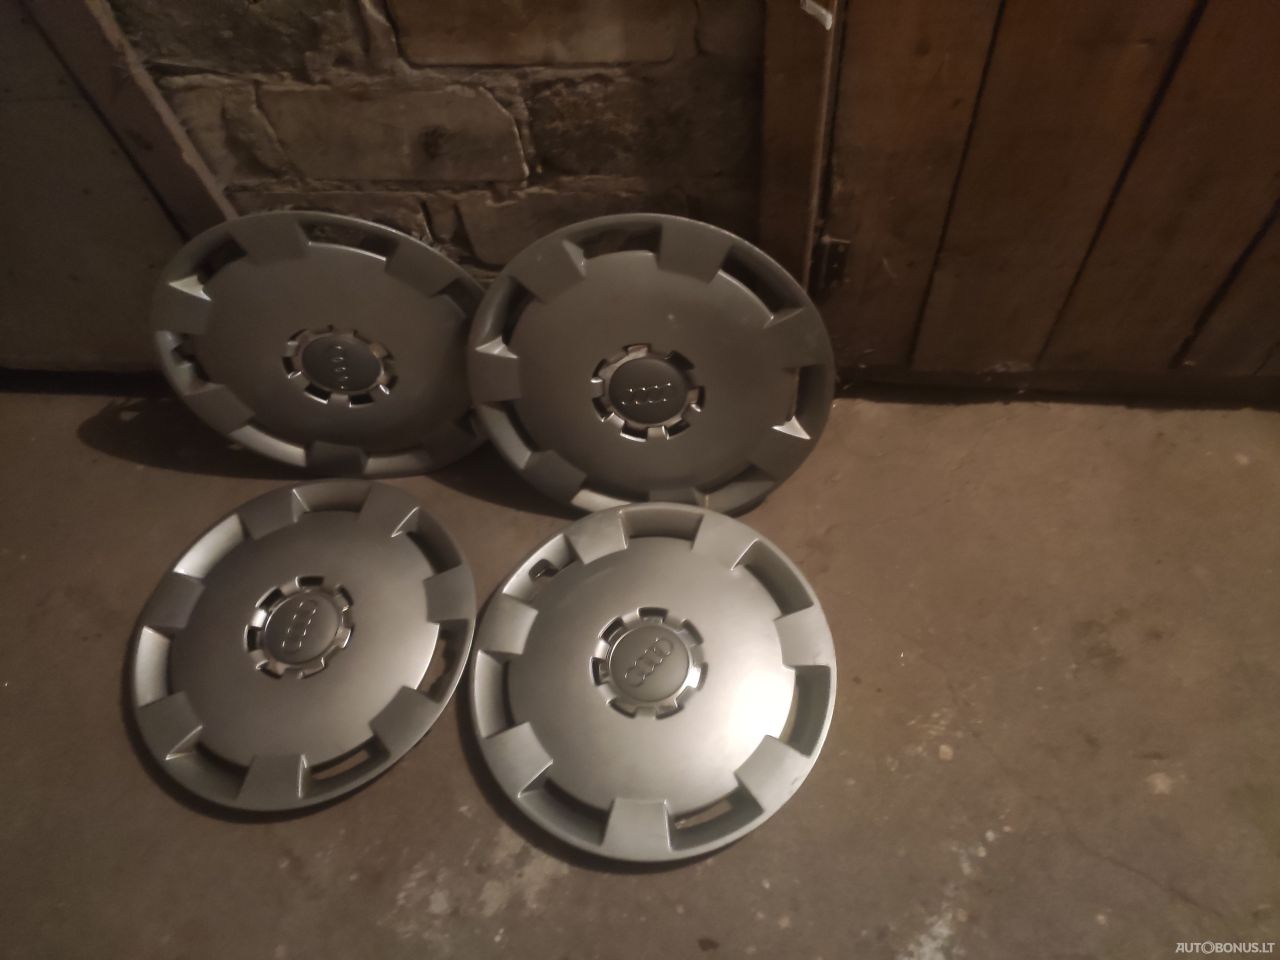 Audi wheel caps rims